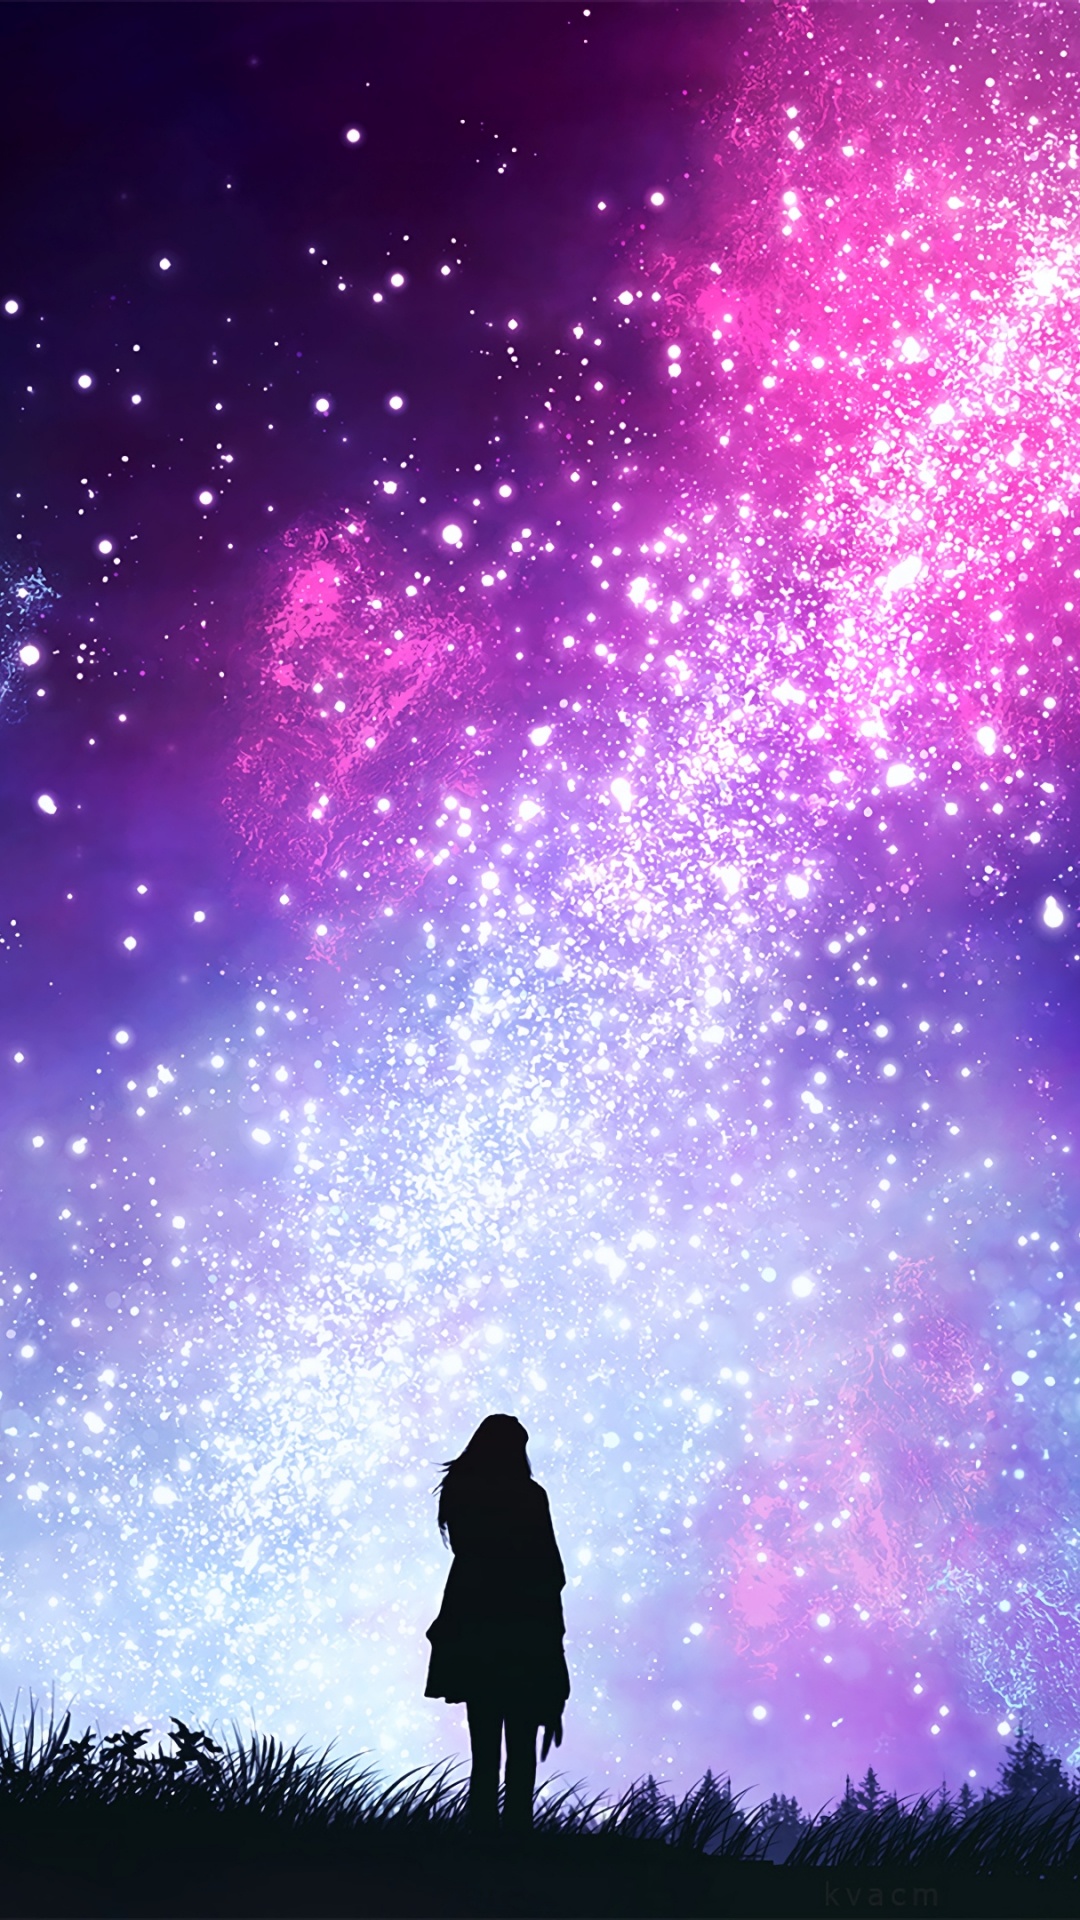 Silueta de Hombre y Mujer Bajo el Cielo Púrpura. Wallpaper in 1080x1920 Resolution